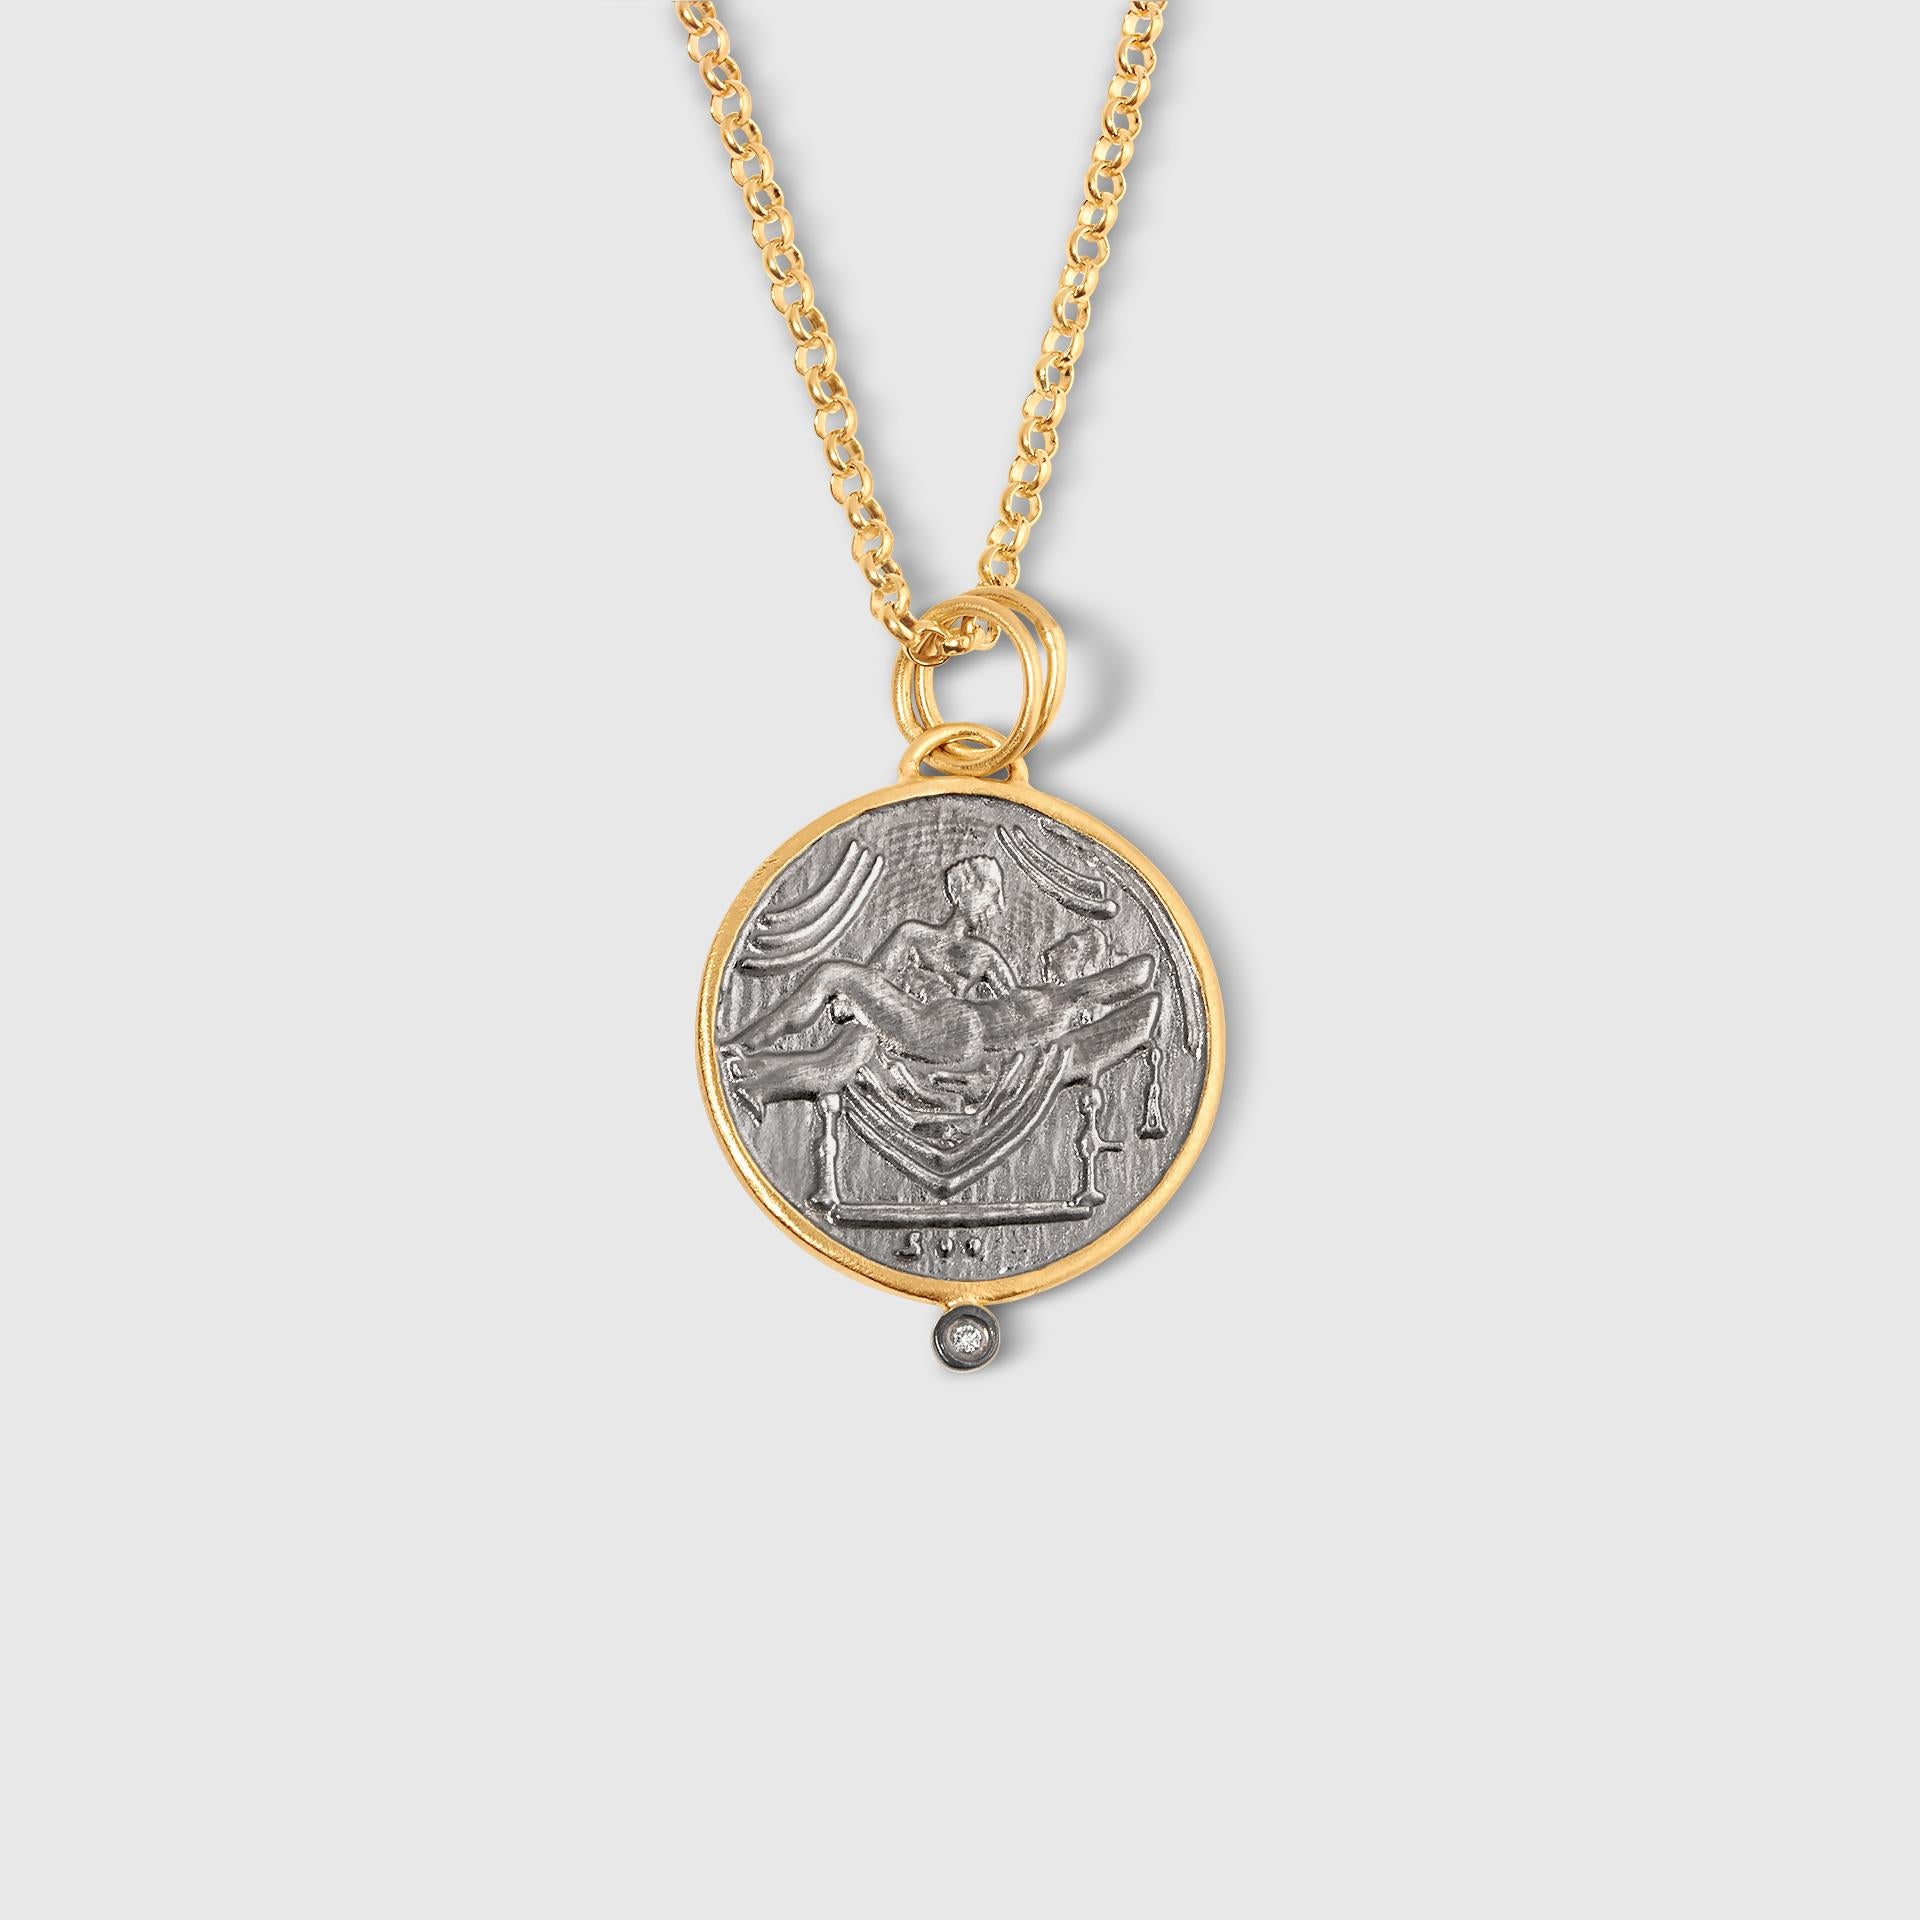 XII Pompei Münze mit Diamanten, 24kt Gelbgold und Silber, Größe Large, Diamanten: 0.02ct, Farbe: H Klarheit: VS2, Kommt mit 18